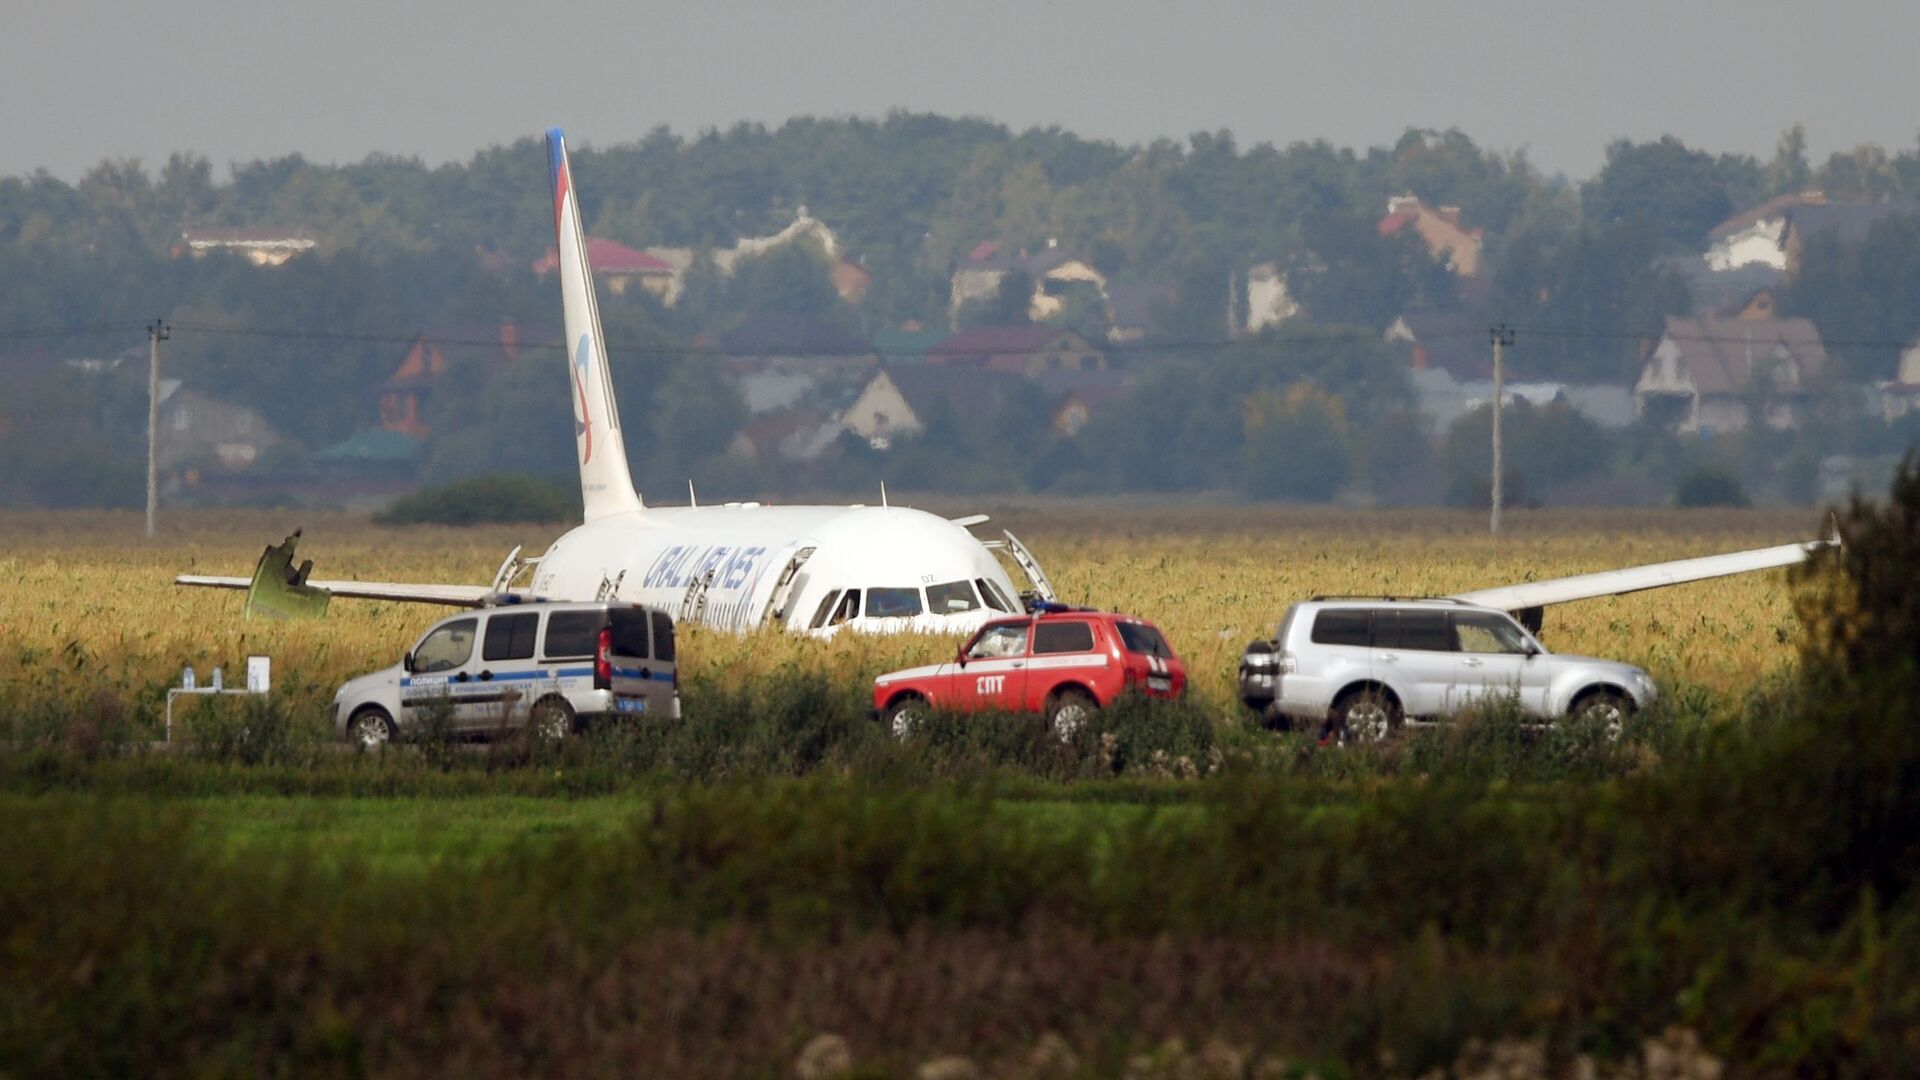 Самолет А-321 с пассажирами на борту совершил жесткую посадку в Подмосковье - РИА Новости, 1920, 15.08.2019